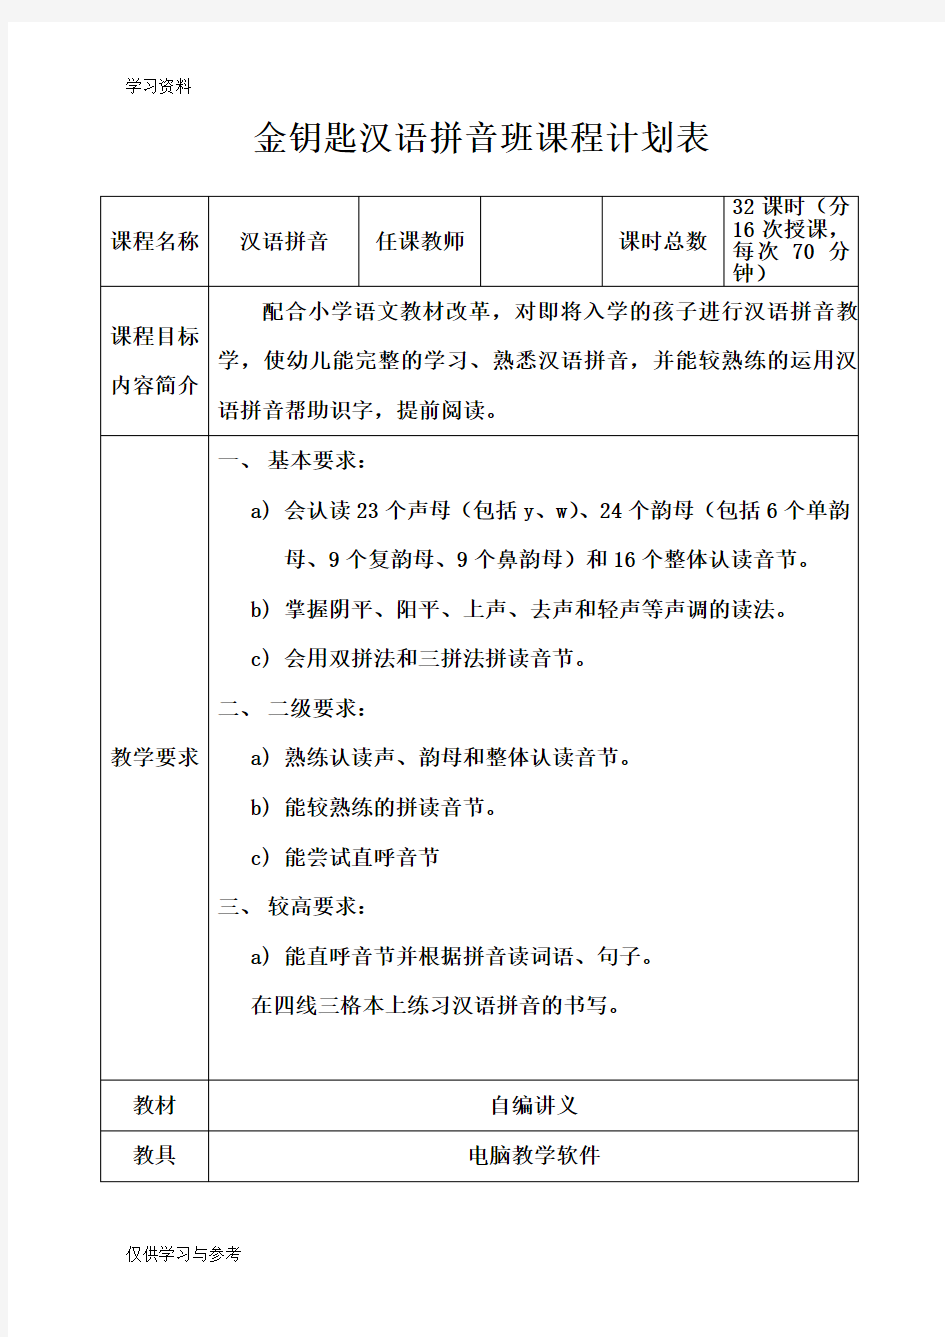 汉语拼音班课程计划表学习资料